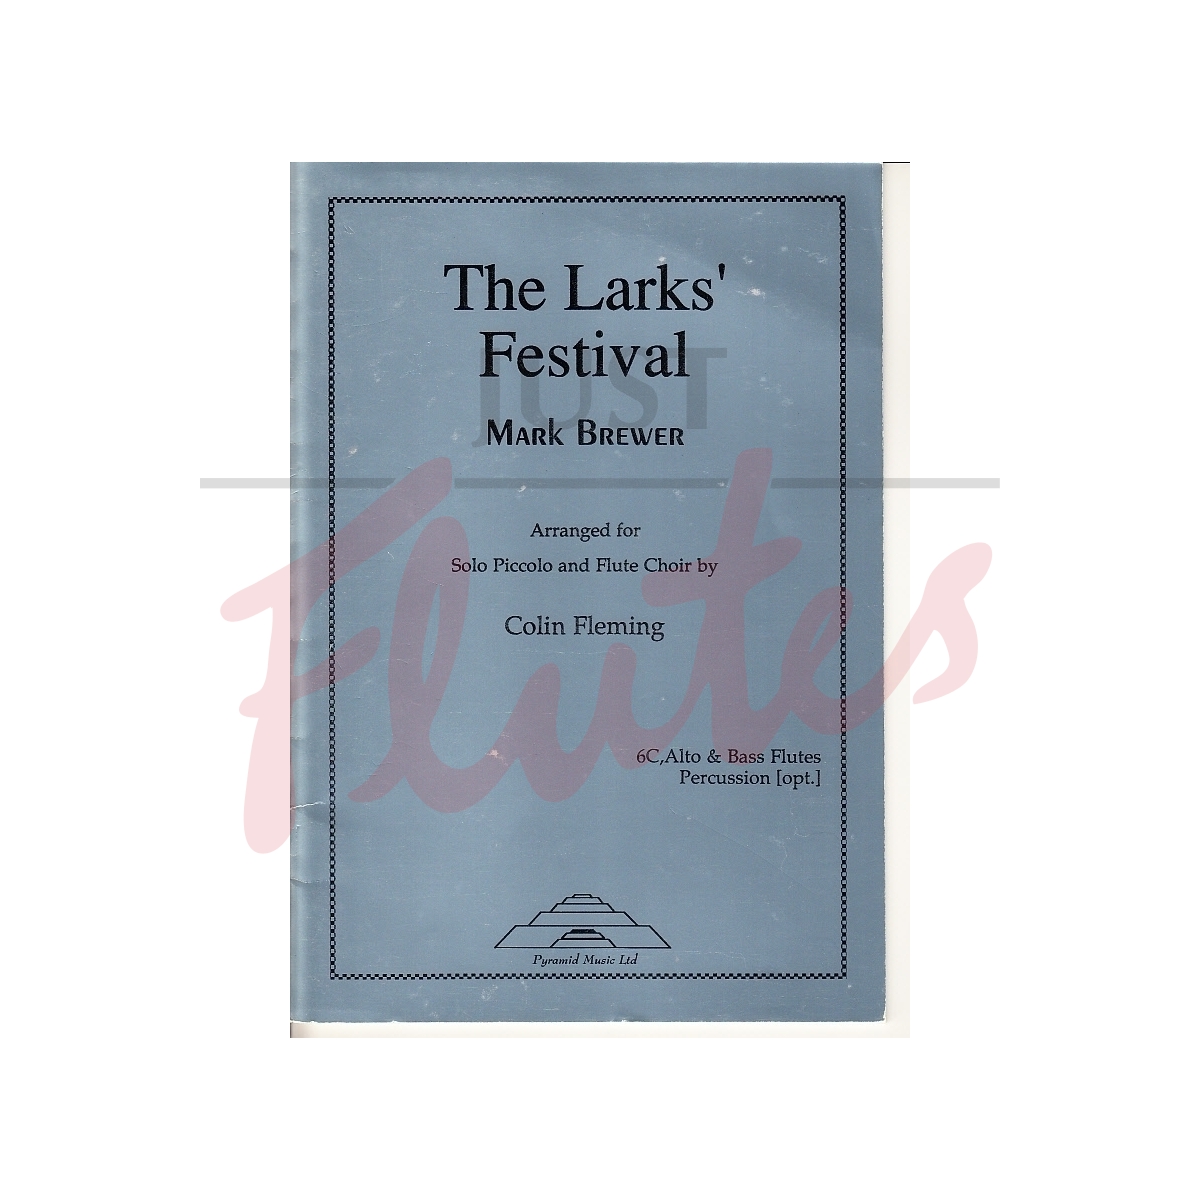 The Lark's Festival